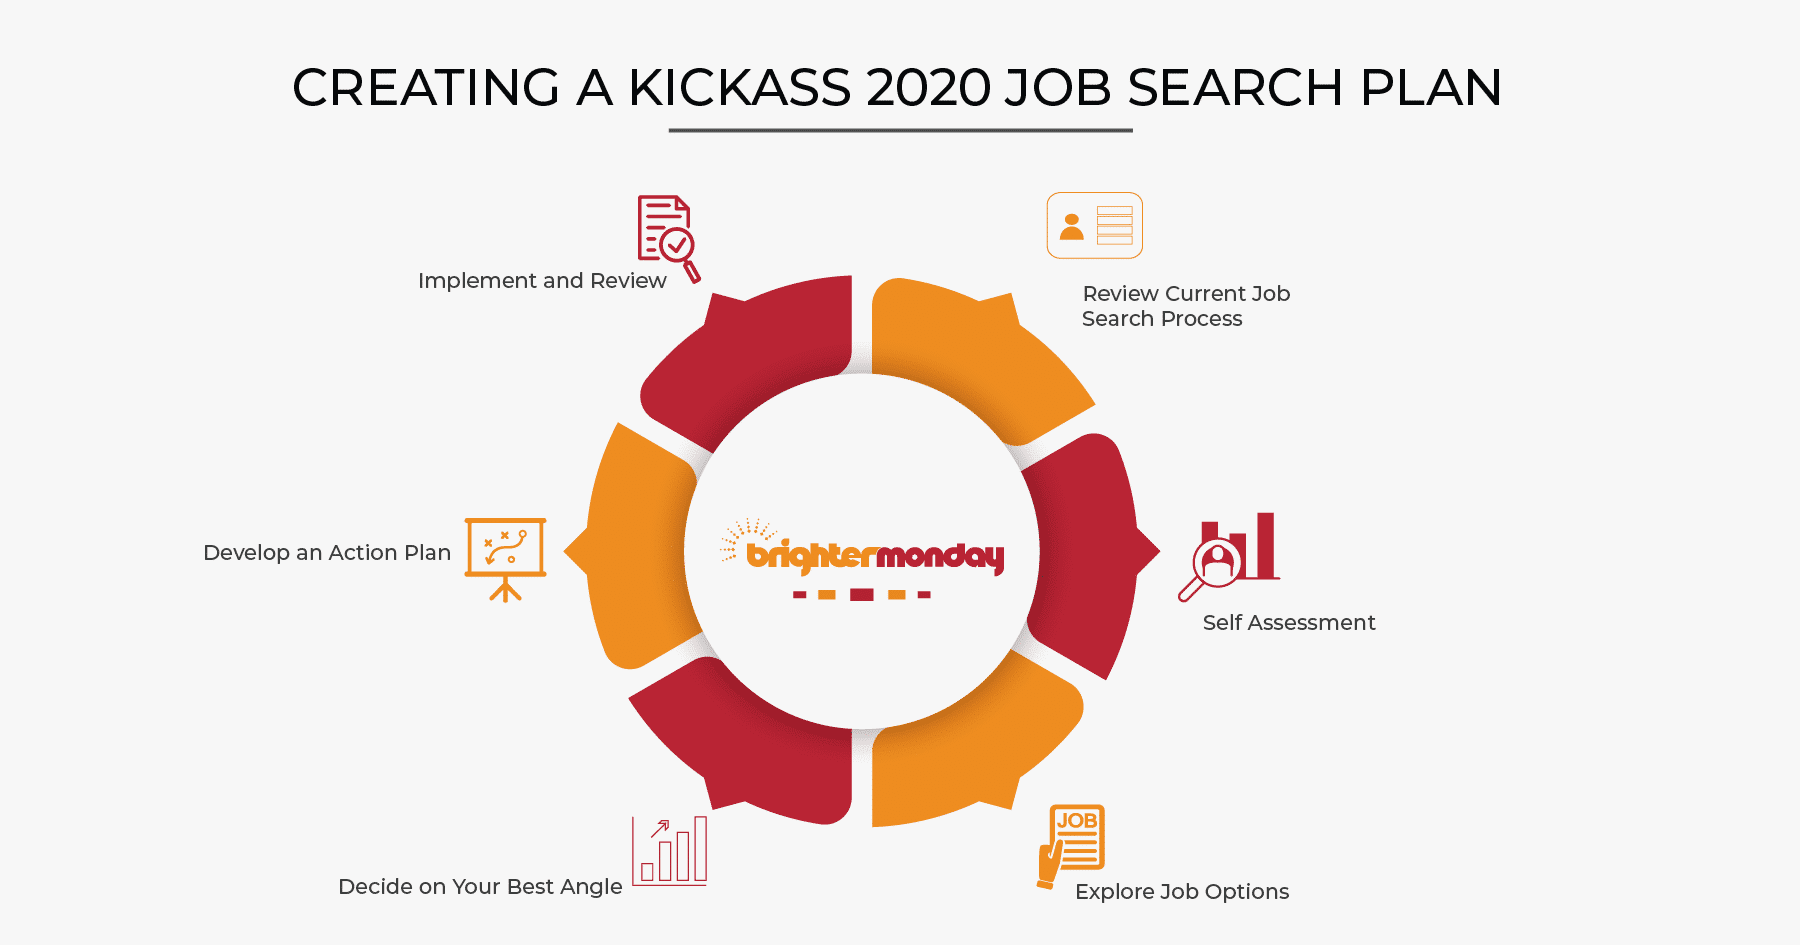 2020 job search plan